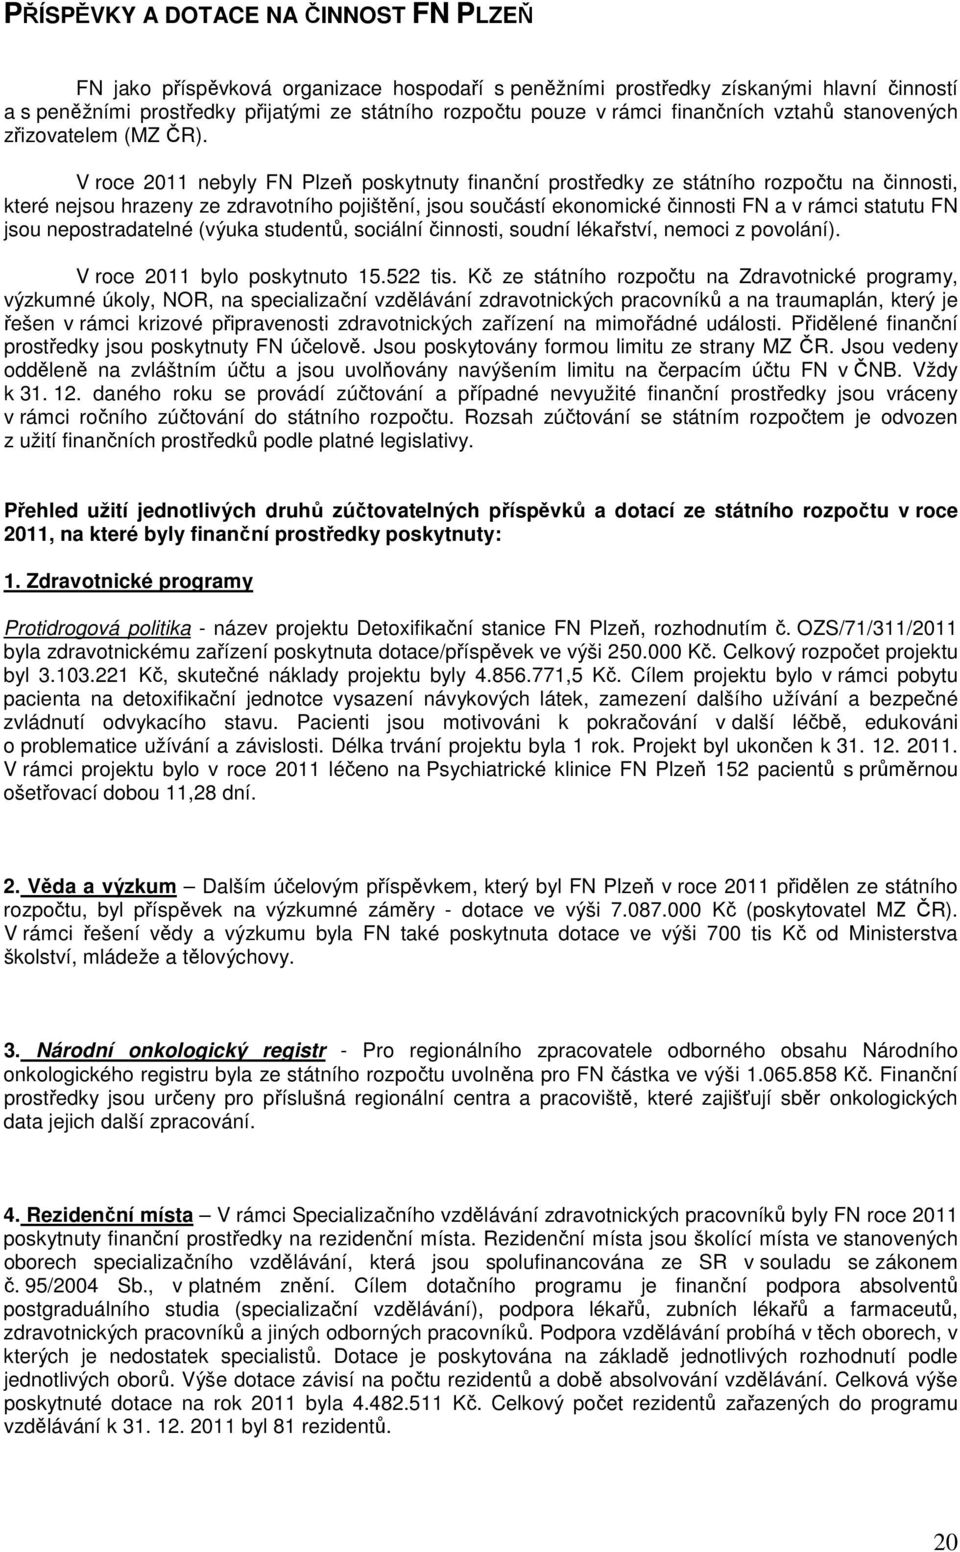 V roce 2011 nebyly FN Plzeň poskytnuty finanční prostředky ze státního rozpočtu na činnosti, které nejsou hrazeny ze zdravotního pojištění, jsou součástí ekonomické činnosti FN a v rámci statutu FN